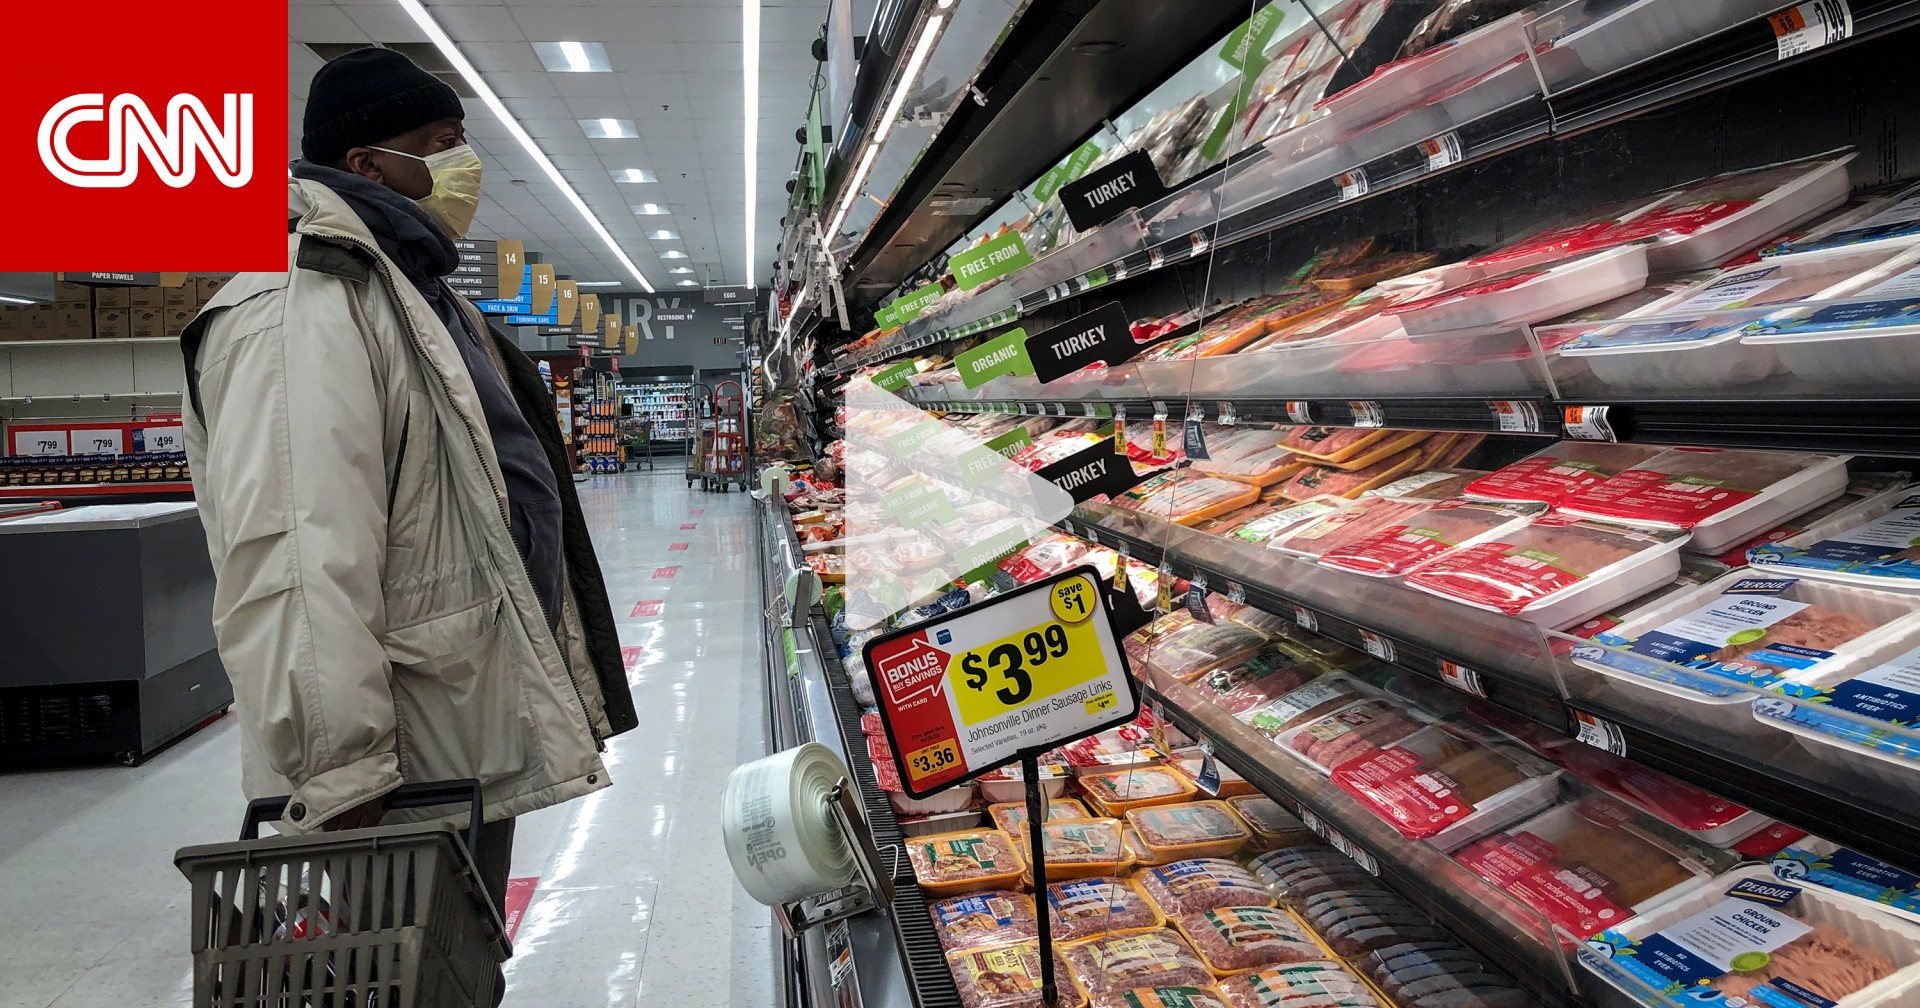 فيروس كورونا يدفع أسعار اللحوم الأمريكية إلى أعلى مستوياتها.. كم بلغت؟